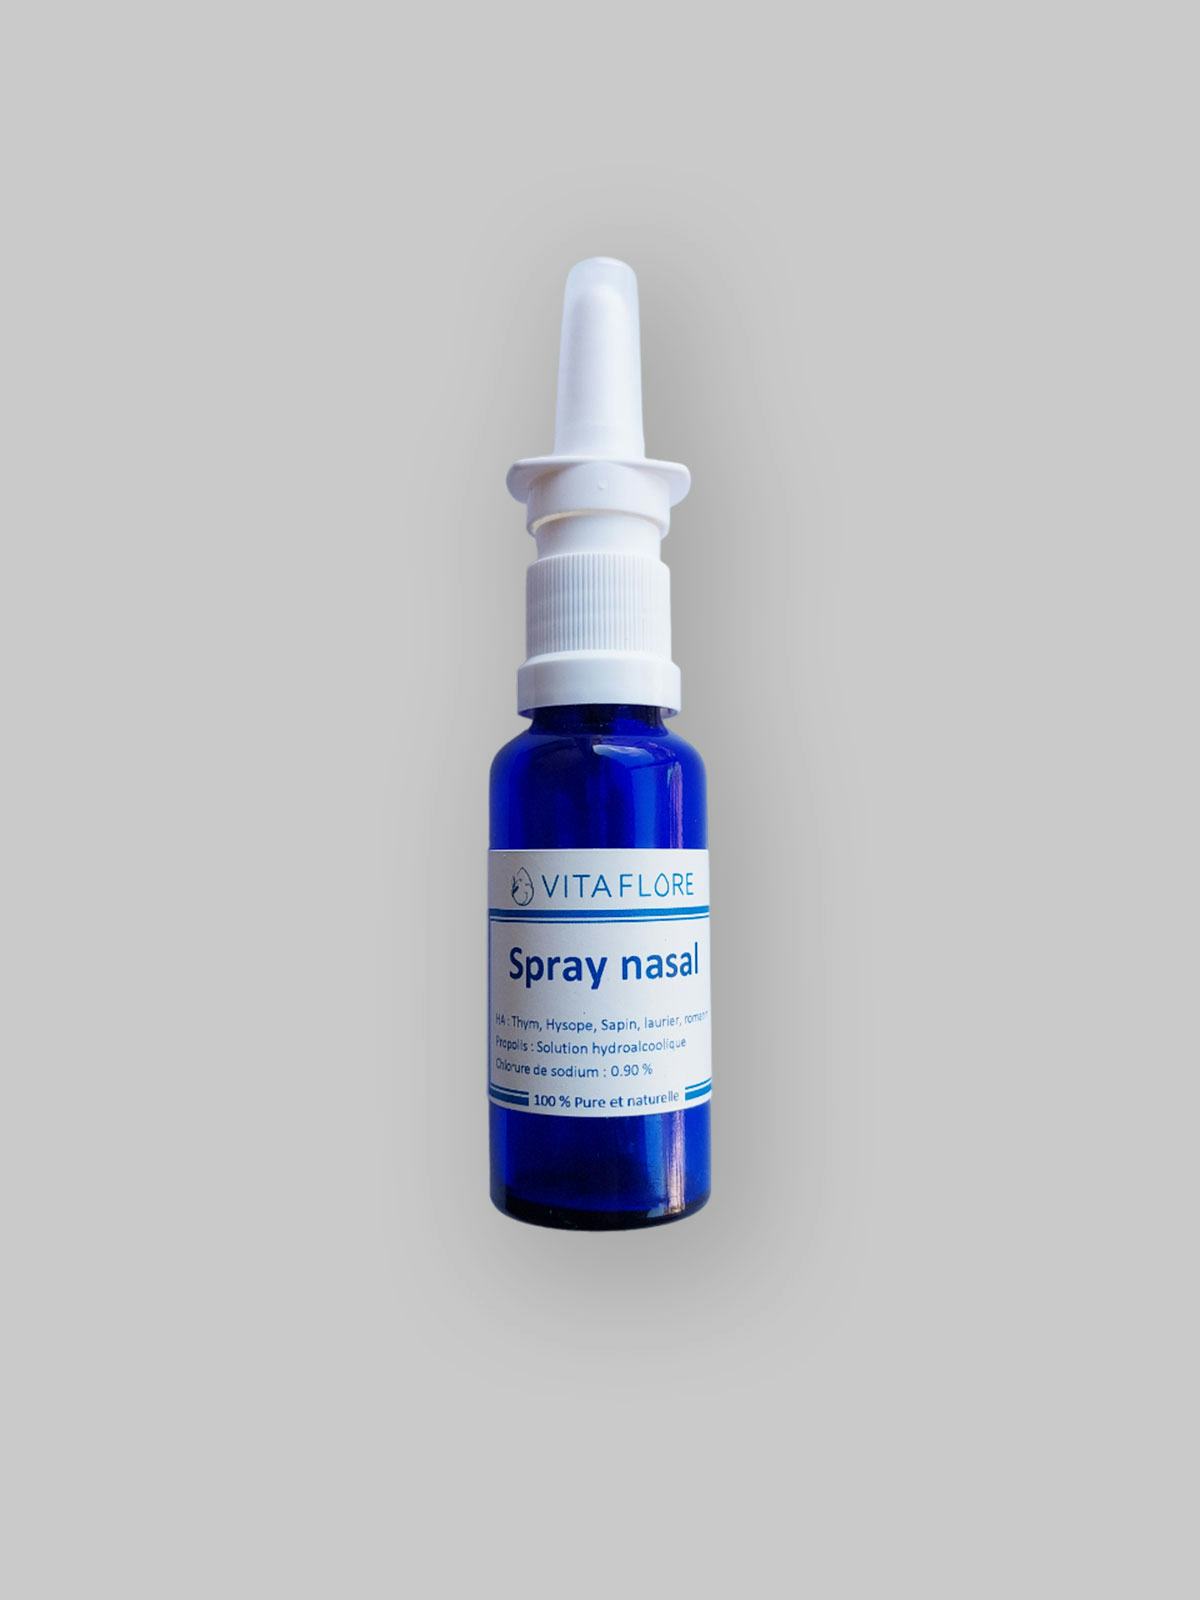 Spray nasal, prodotto artigianale per la vendita diretta in Svizzera